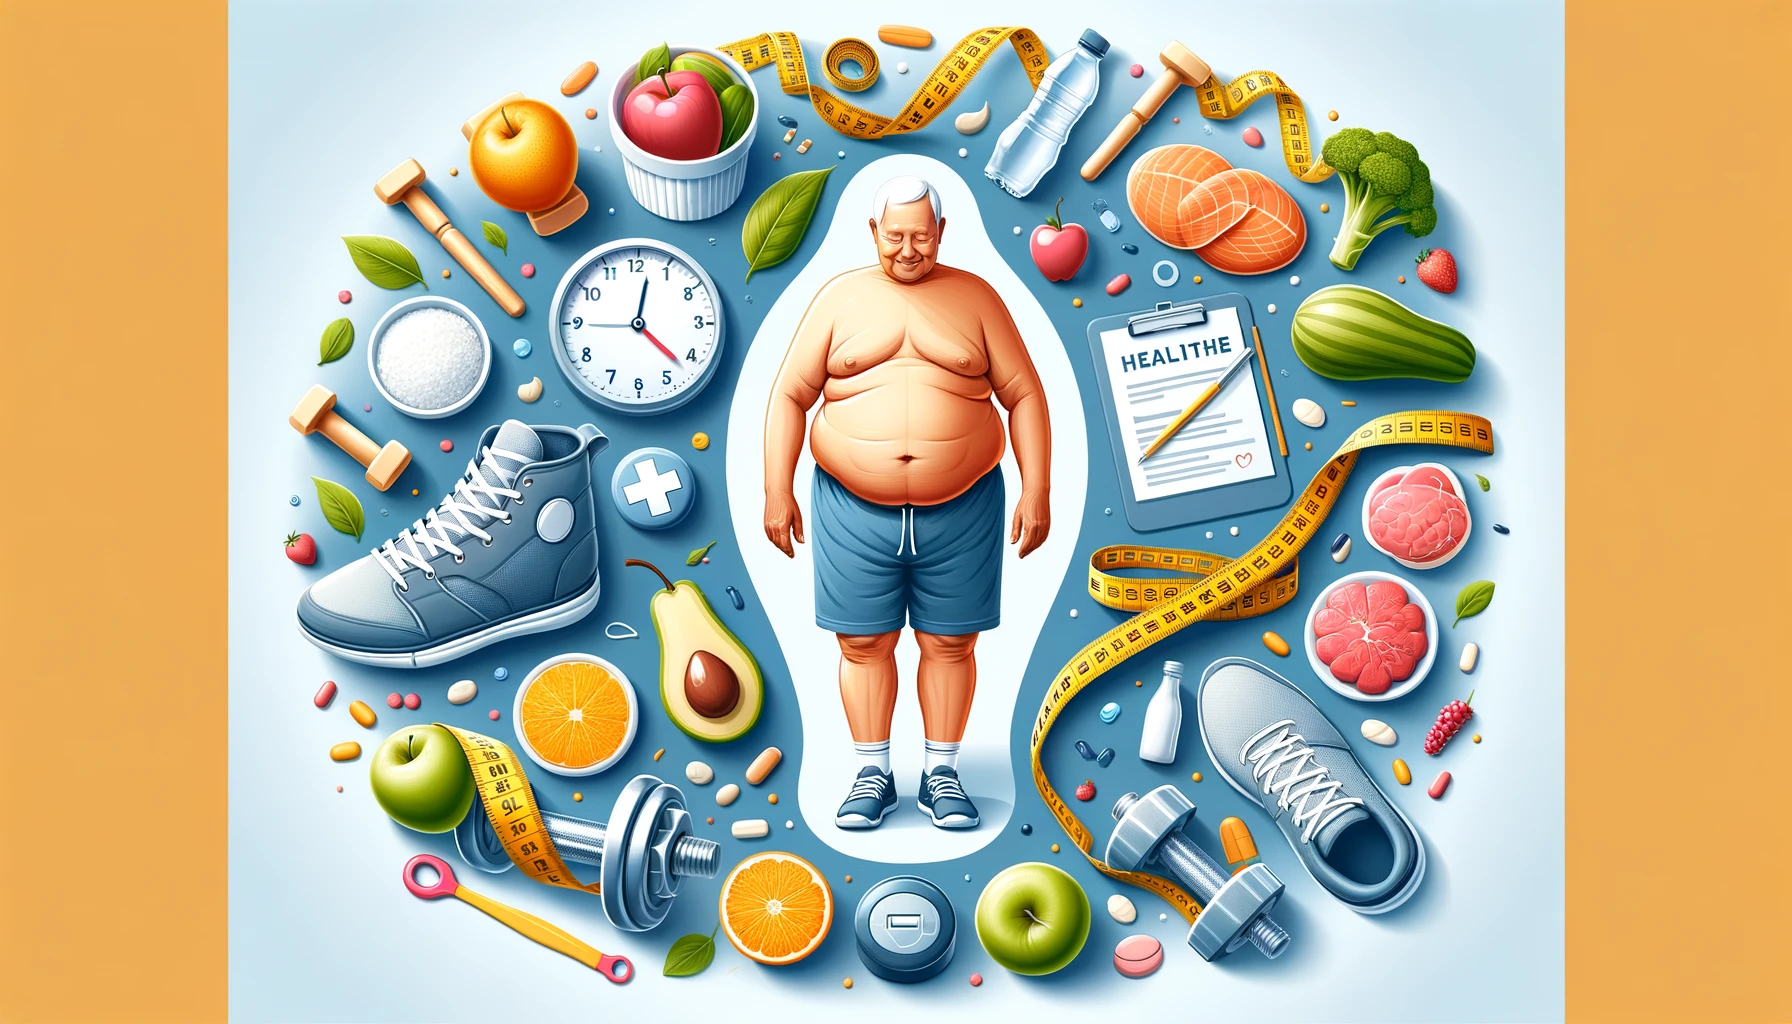 高齢期の体脂肪率変化が健康に与える影響と、適正な体脂肪率管理の方法について解説。生活習慣病やサルコペニア肥満のリスクを減らし、健康寿命を延ばすための運動と食事のコツをご紹介。今すぐチェックして、健康的な老後を送りましょう！